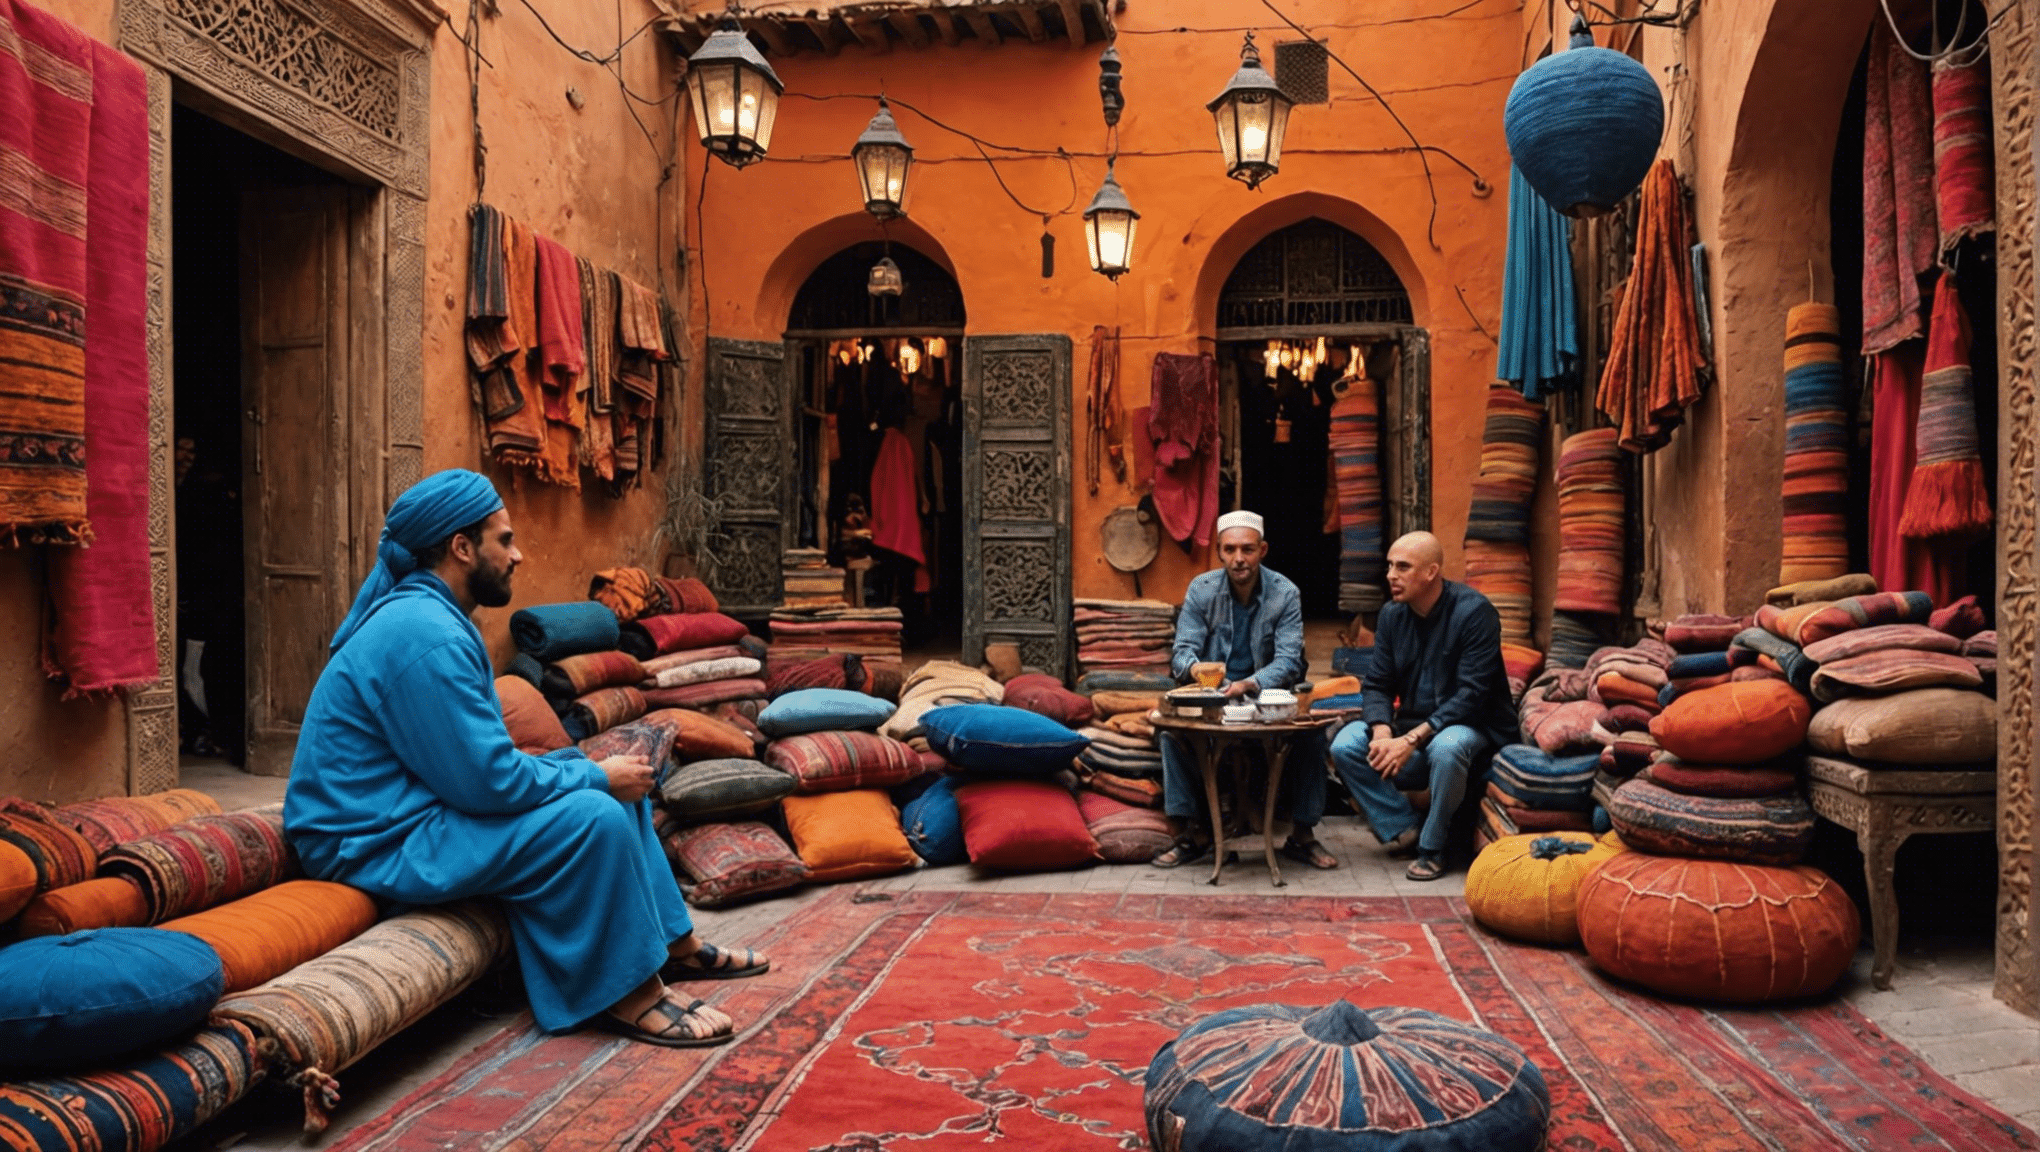 Explore el mejor destino para una escapada de aventuras y descubra los vibrantes zocos y las alfombras exóticas de una ciudad marroquí.